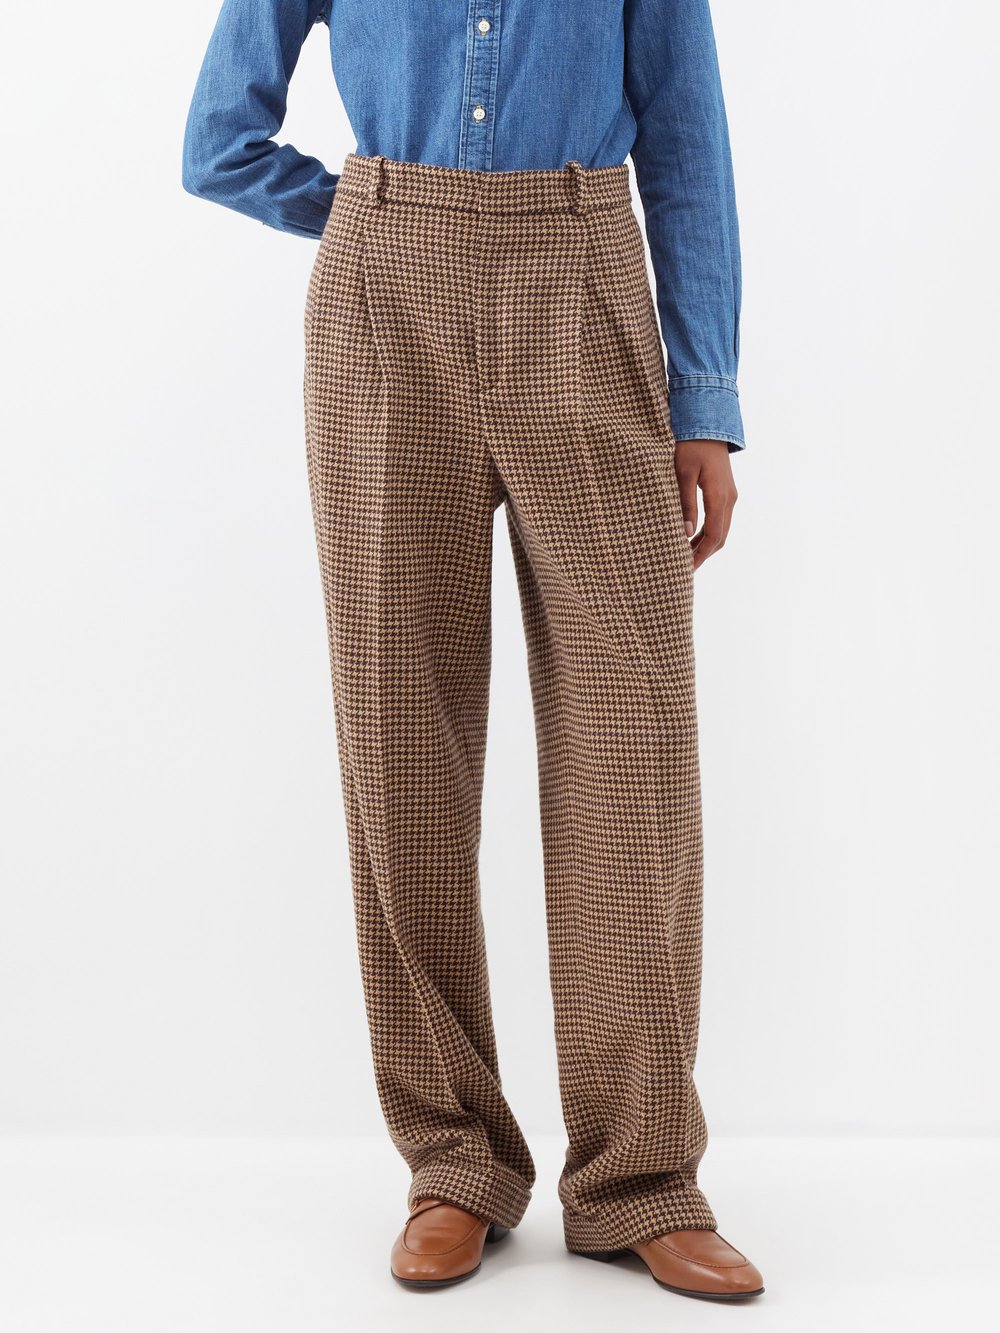 Твидовые брюки с узором «гусиные лапки» и складками спереди Polo Ralph Lauren, коричневый брюки oggi с шерстью 46 размер